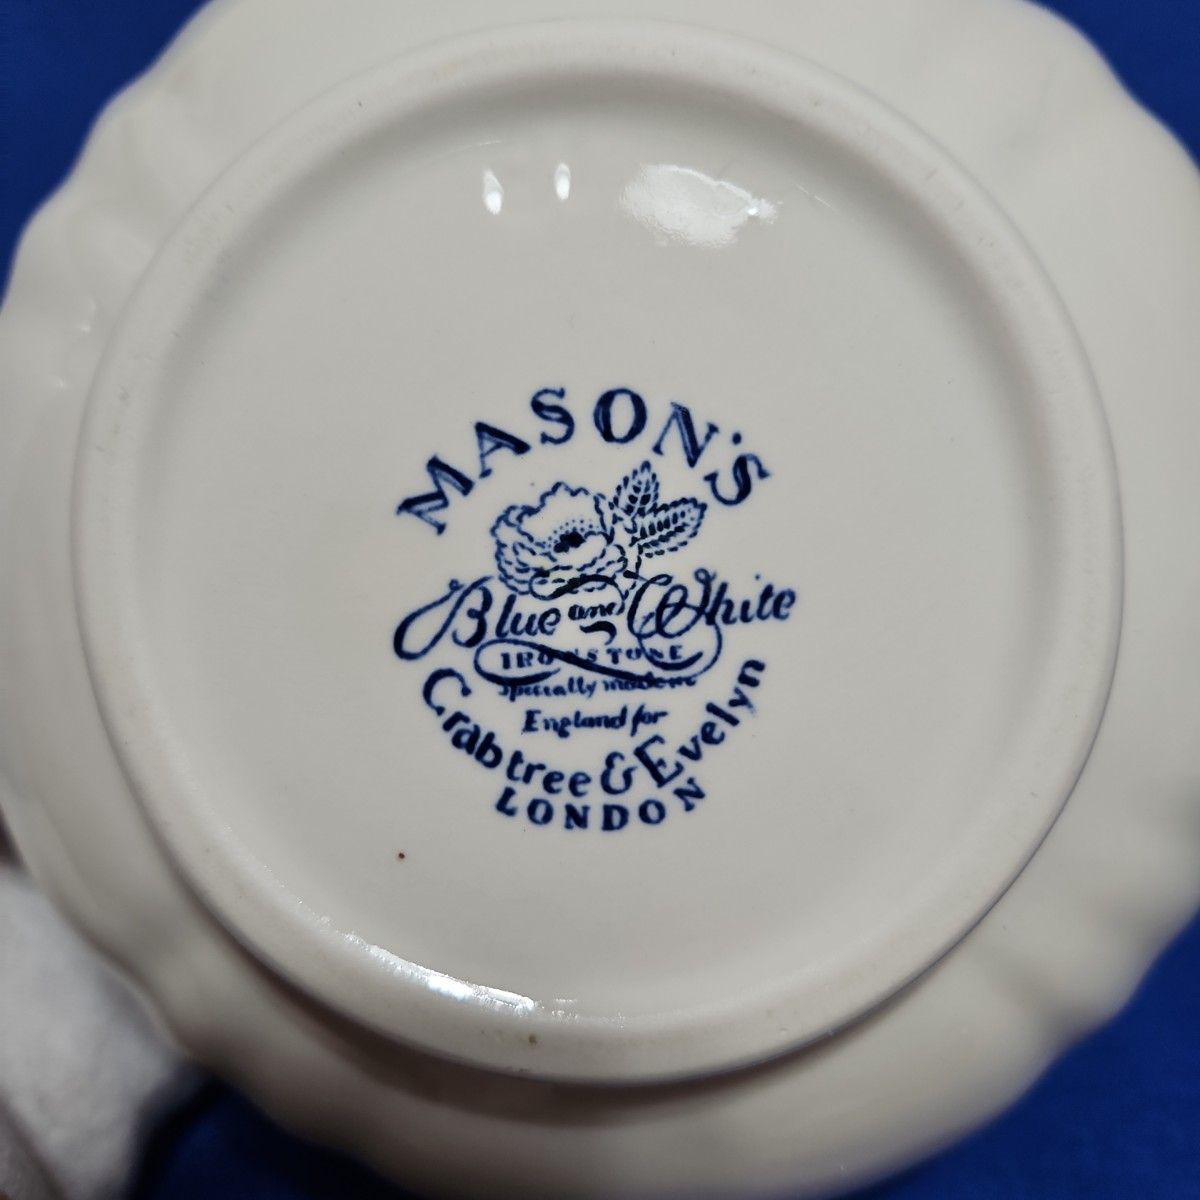 メイソンズ クラブツリー&イブリン ラージサイズ ティーポット Mason's